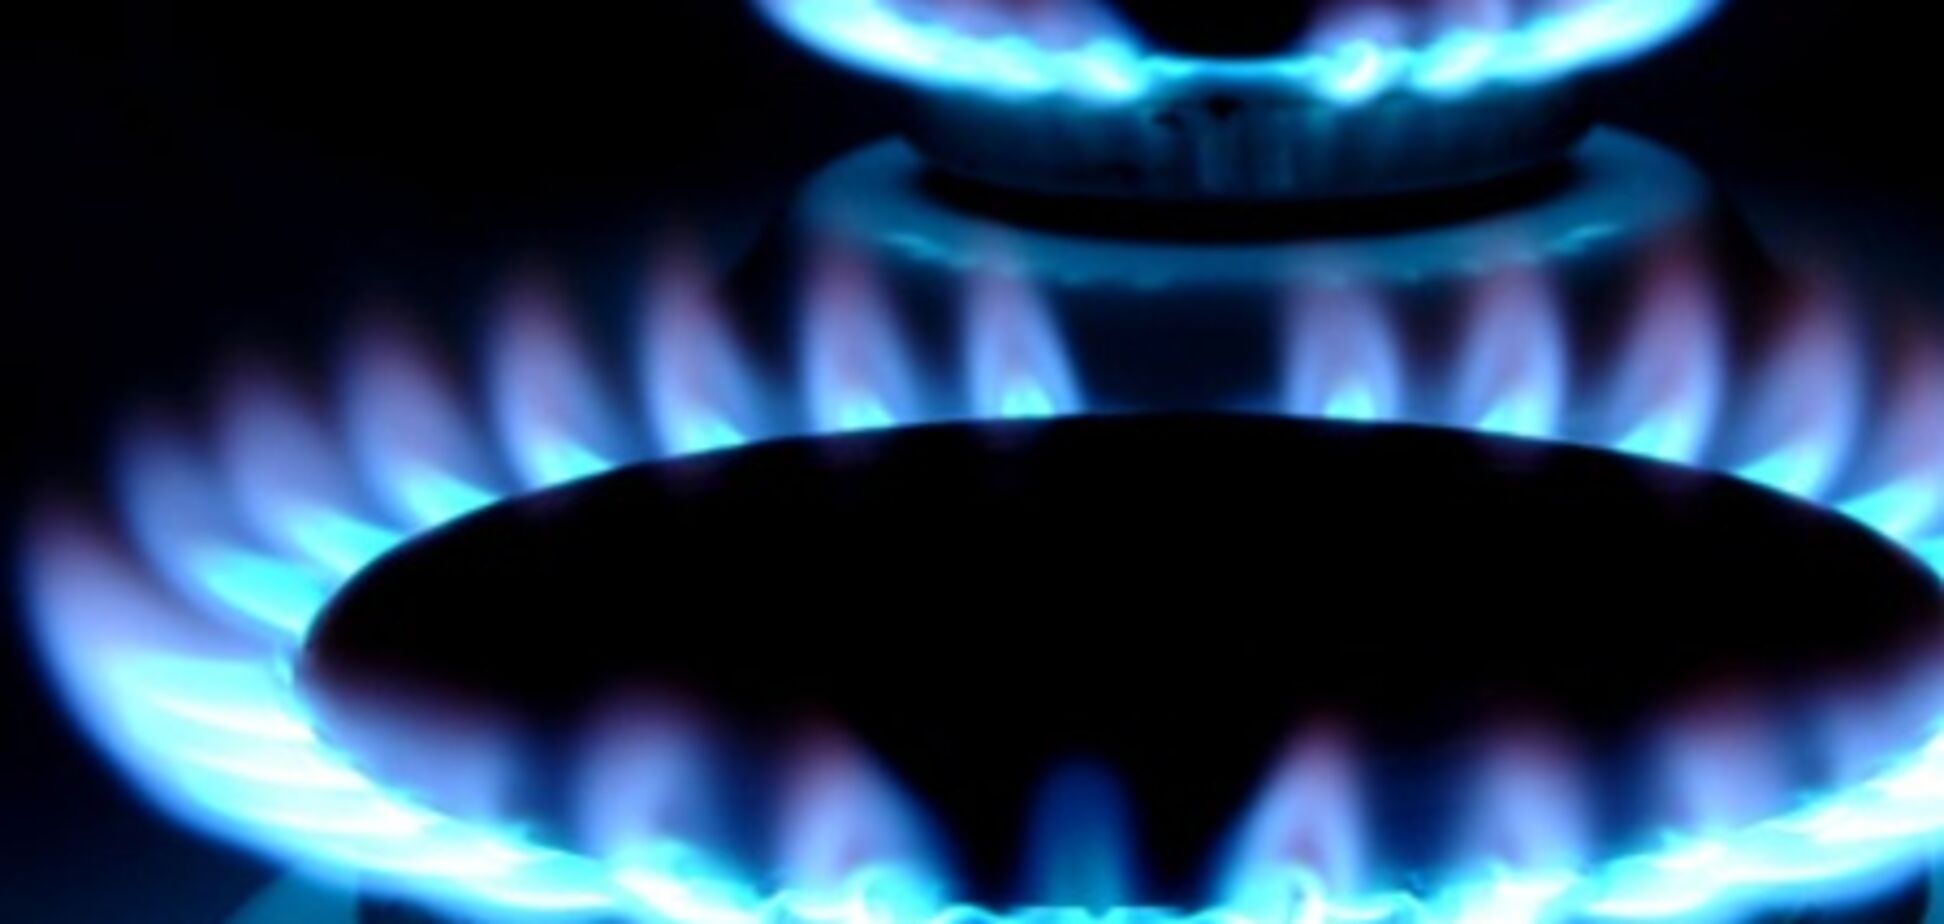 Снижение цены на газ даст абстрактную прибыль – эксперт